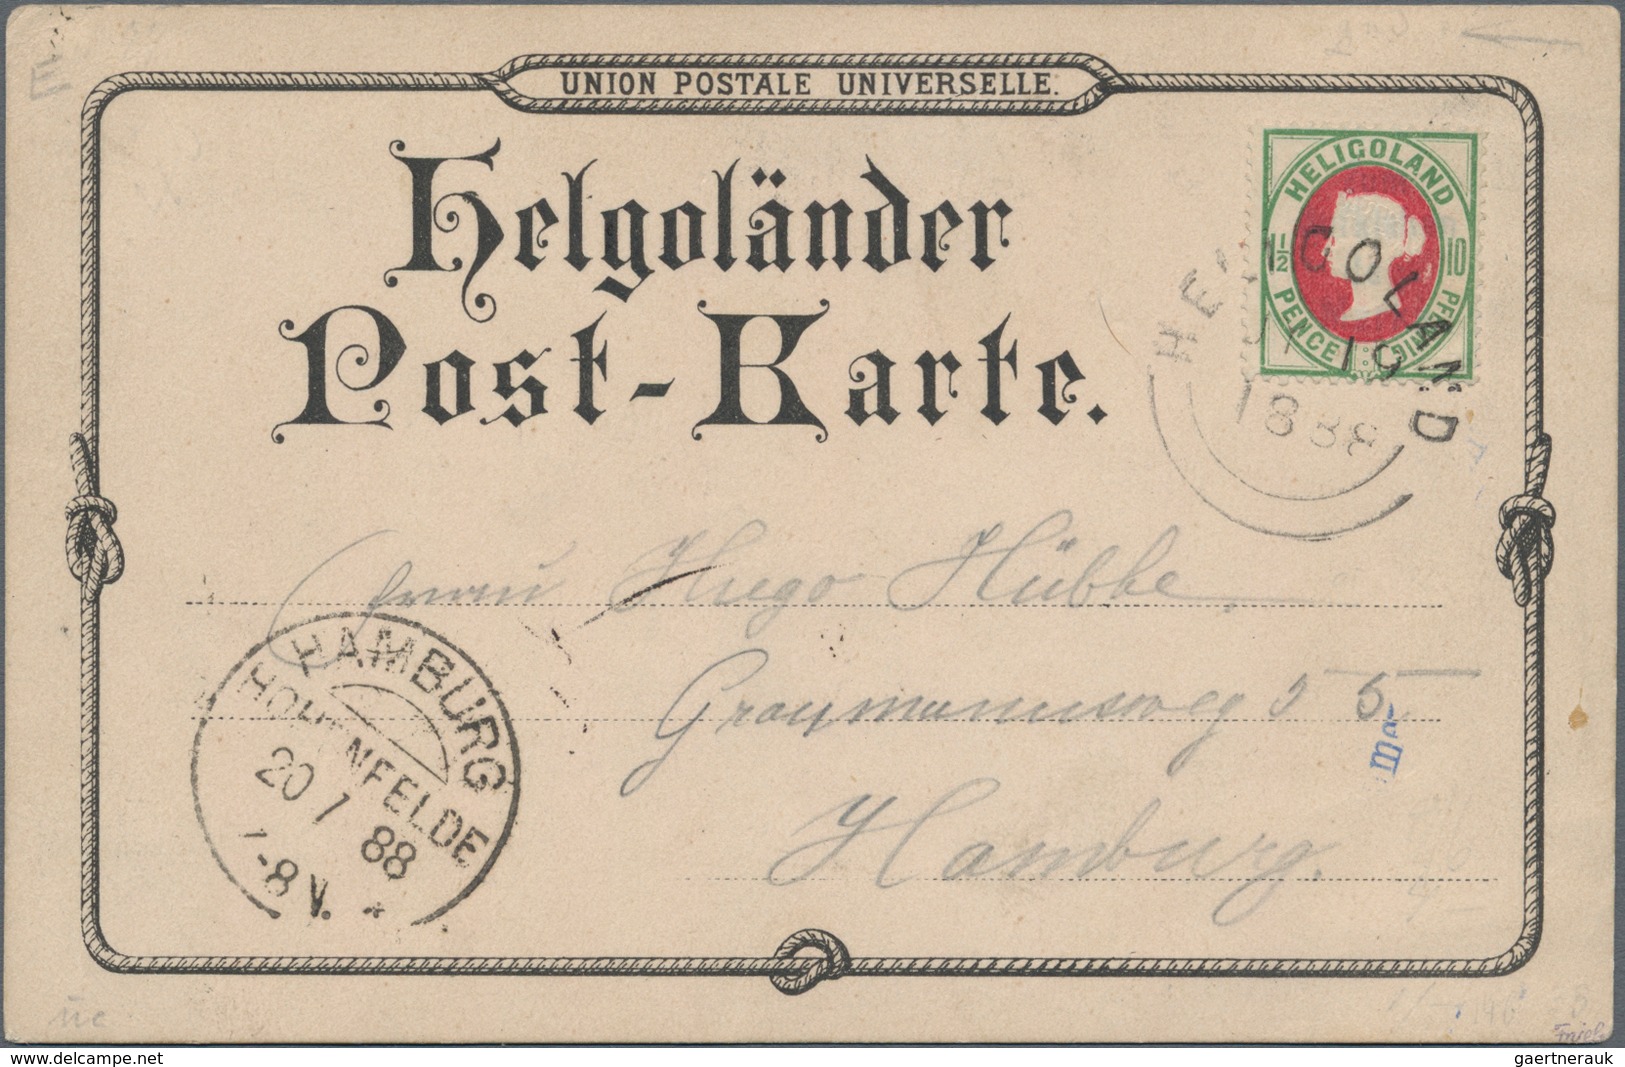 Altdeutschland: 1850/1889, Sammlung mit ca.100 frankierten Belegen und Ganzsachen, dabei viele inter